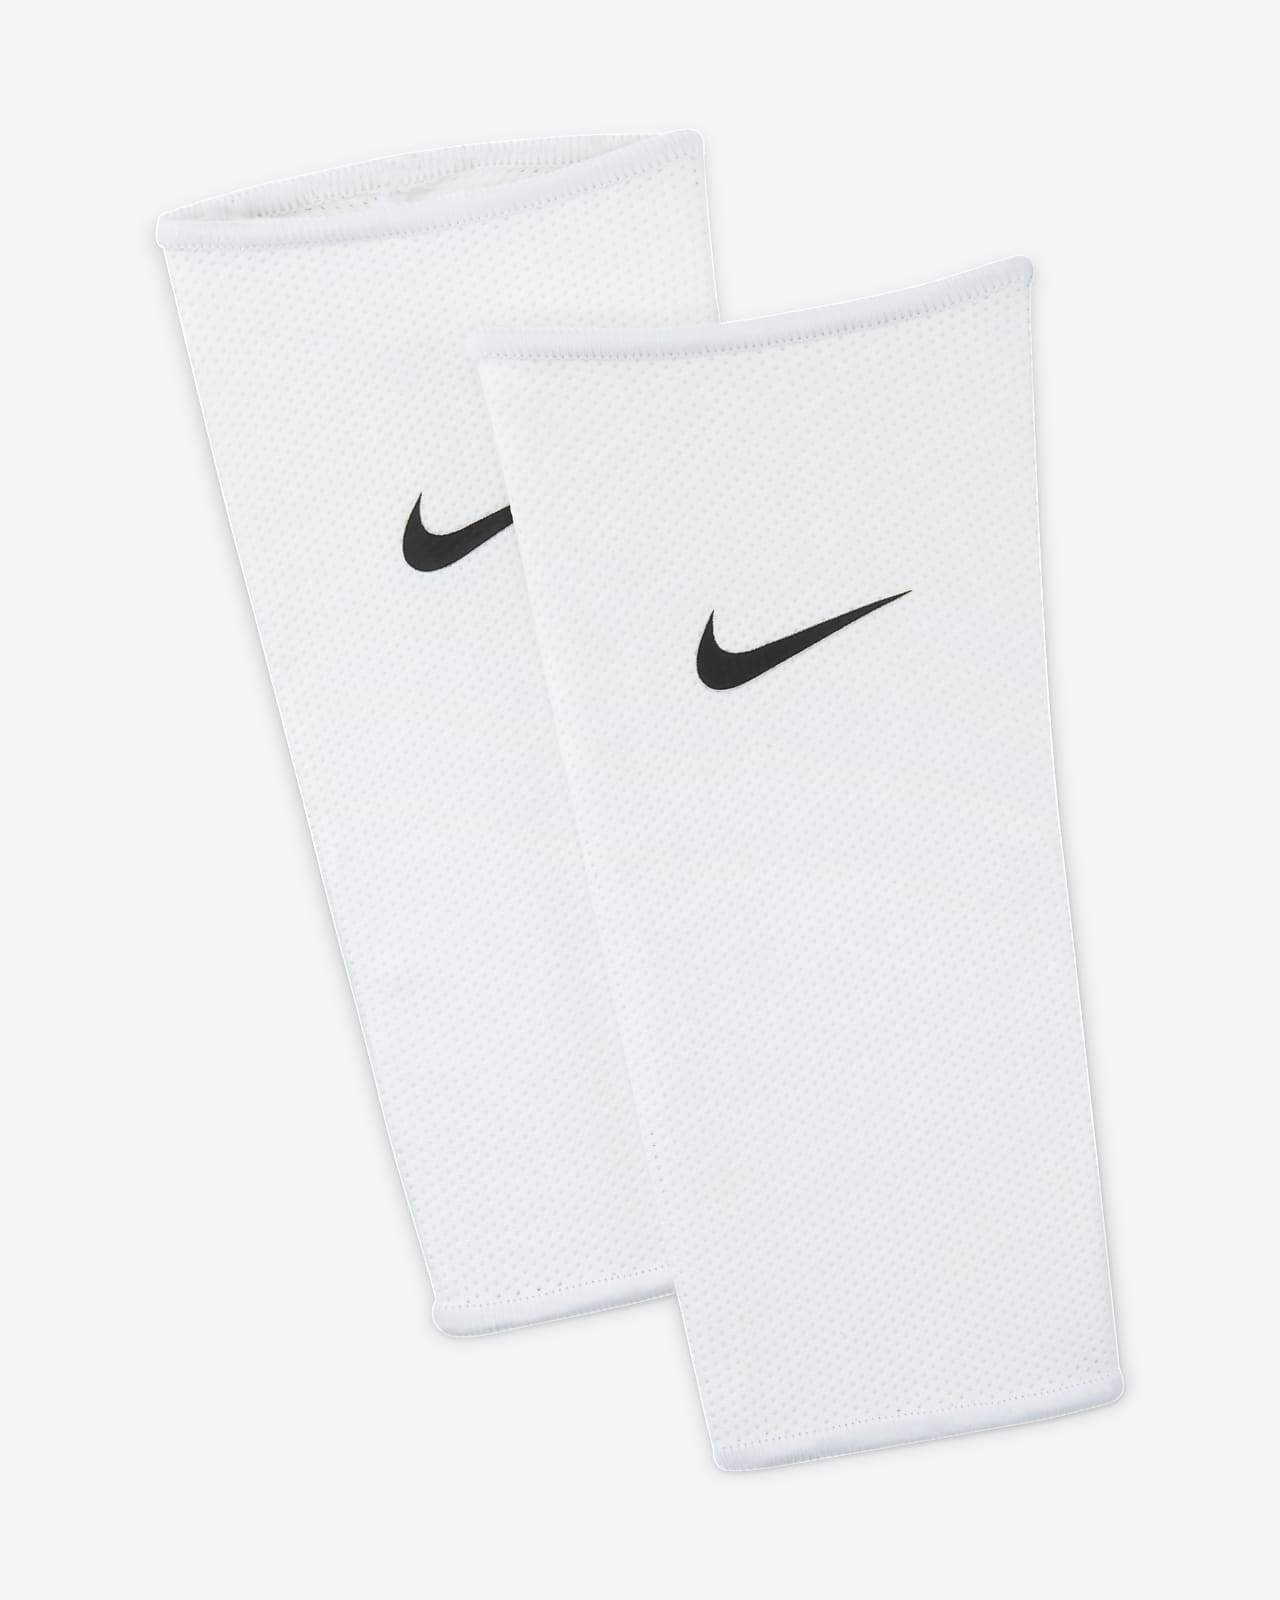 Nike Guard Lock Football Guard Sleeves (1 Pair)